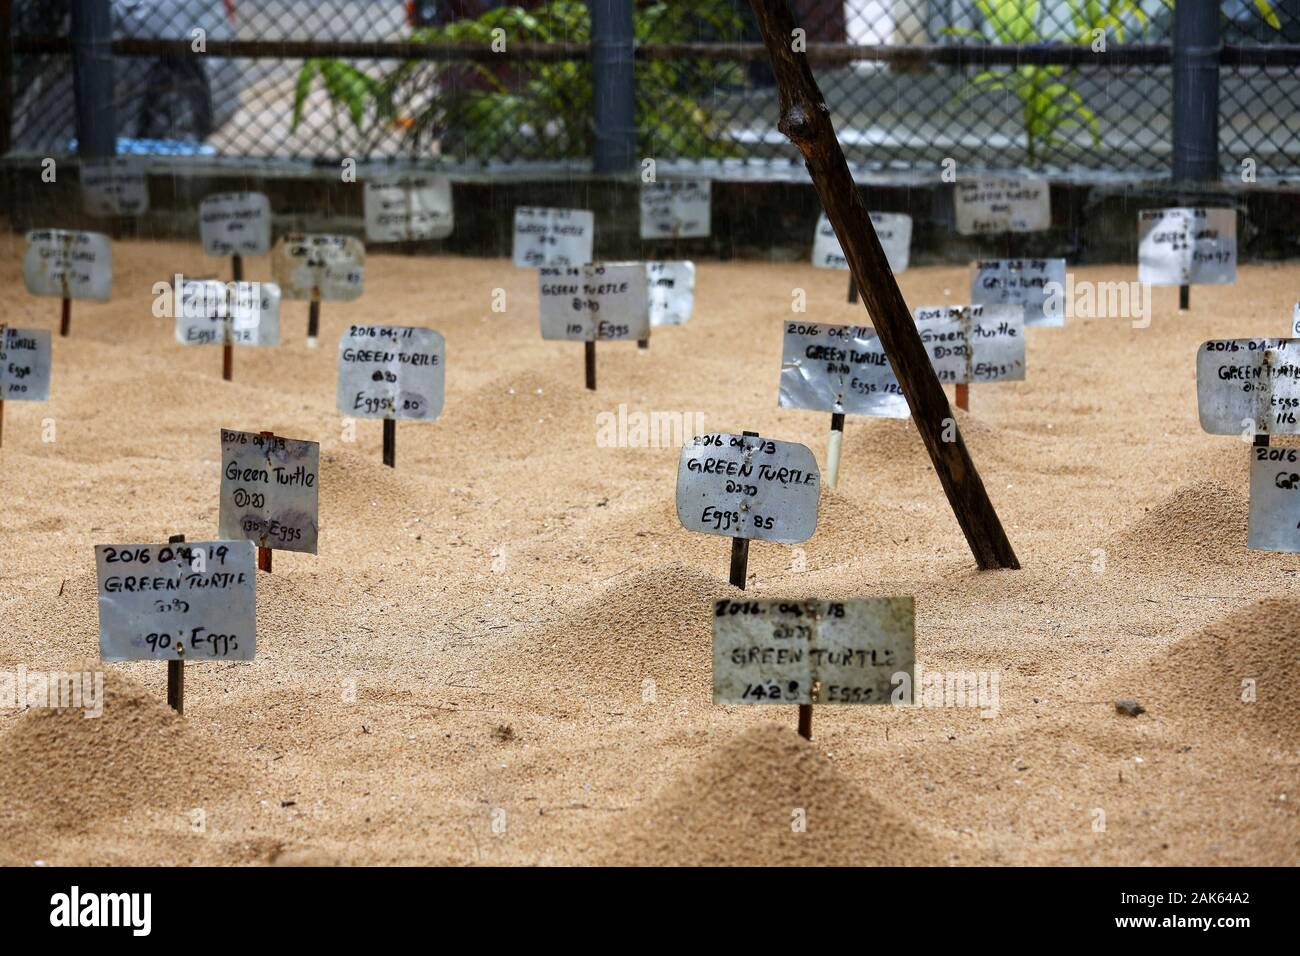 Kosgoda: Sea Turtle Conservation Project, Aufzuchtstation fuer Schildkroeten, eingegraben und markiert, Sri Lanka | usage worldwide Stock Photo